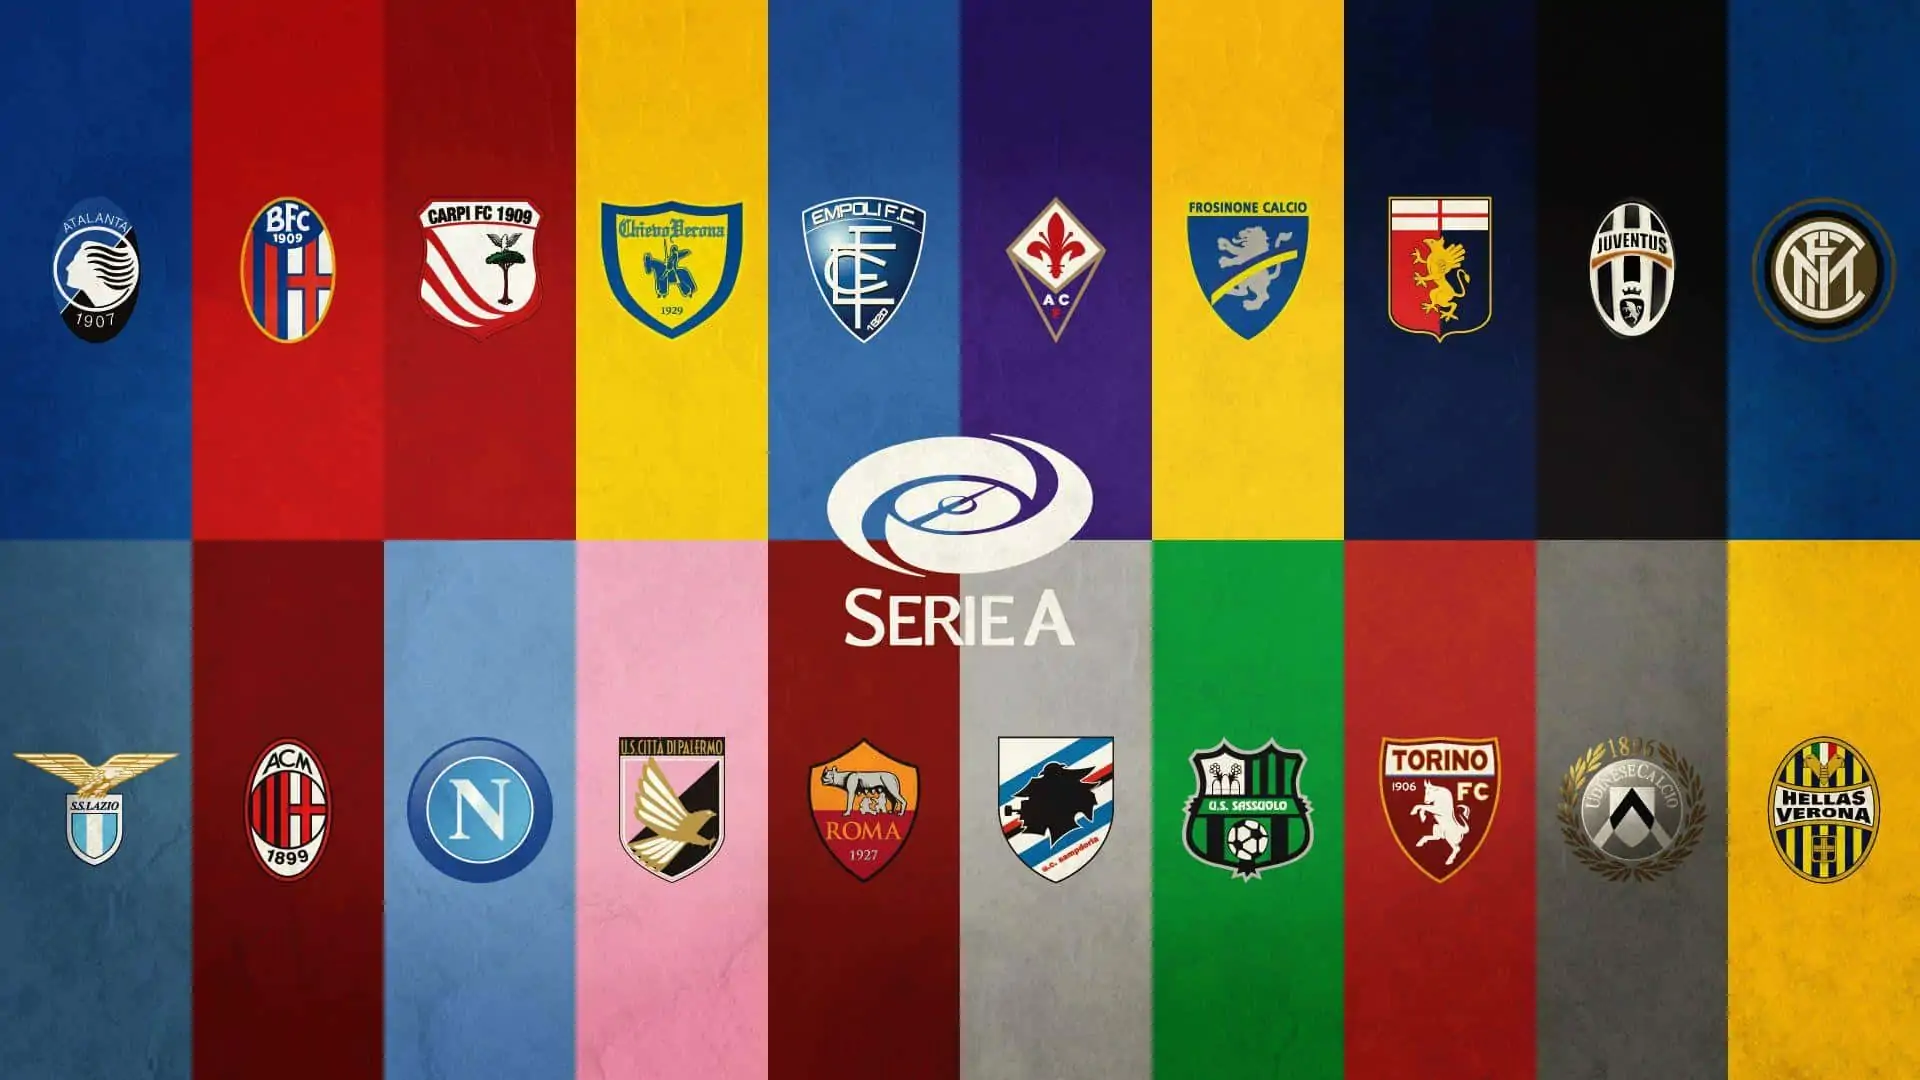 TIJ - Serie A - Teams